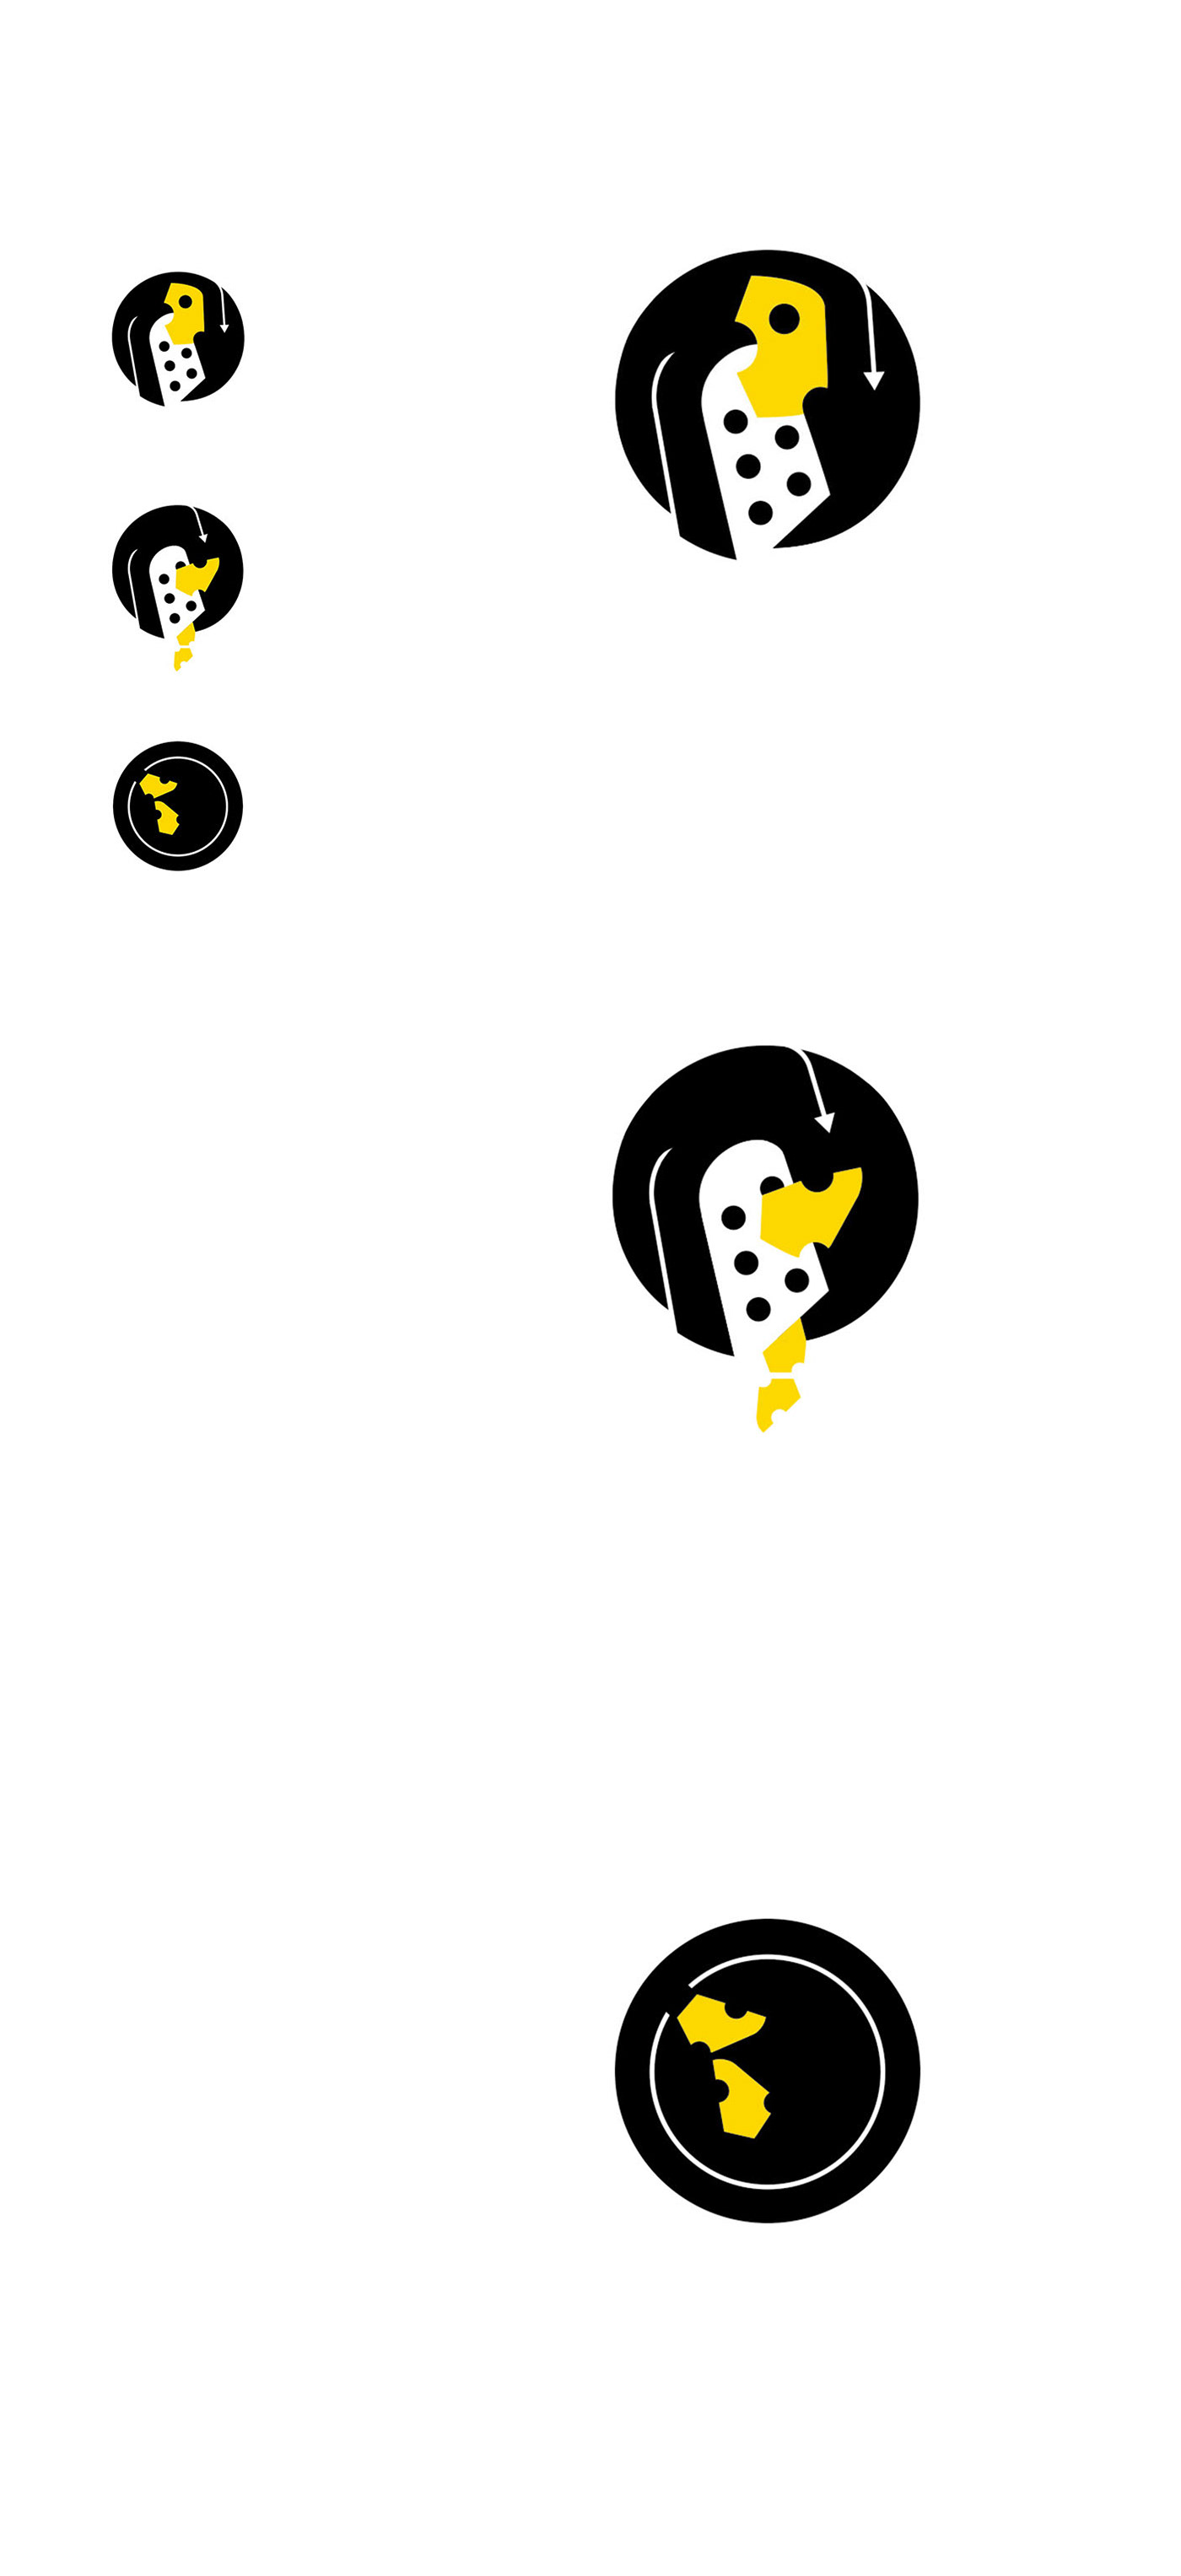 piktogram logo logos graphicdesign